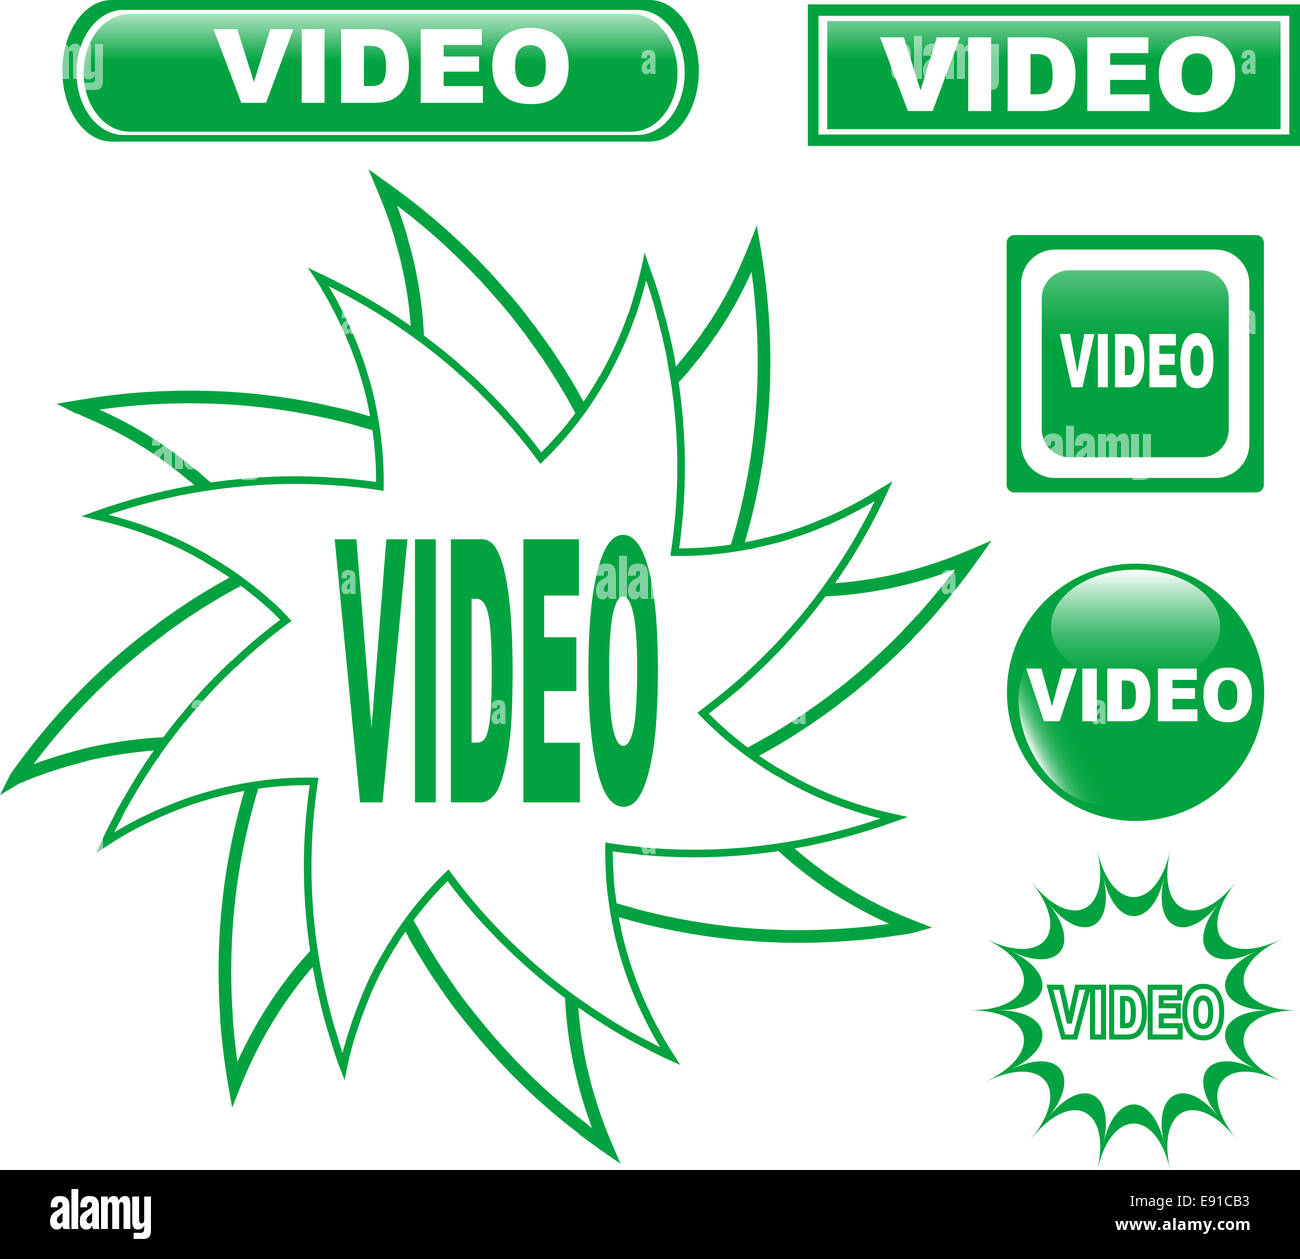 Vidéo bouton glossy web icons set Banque D'Images